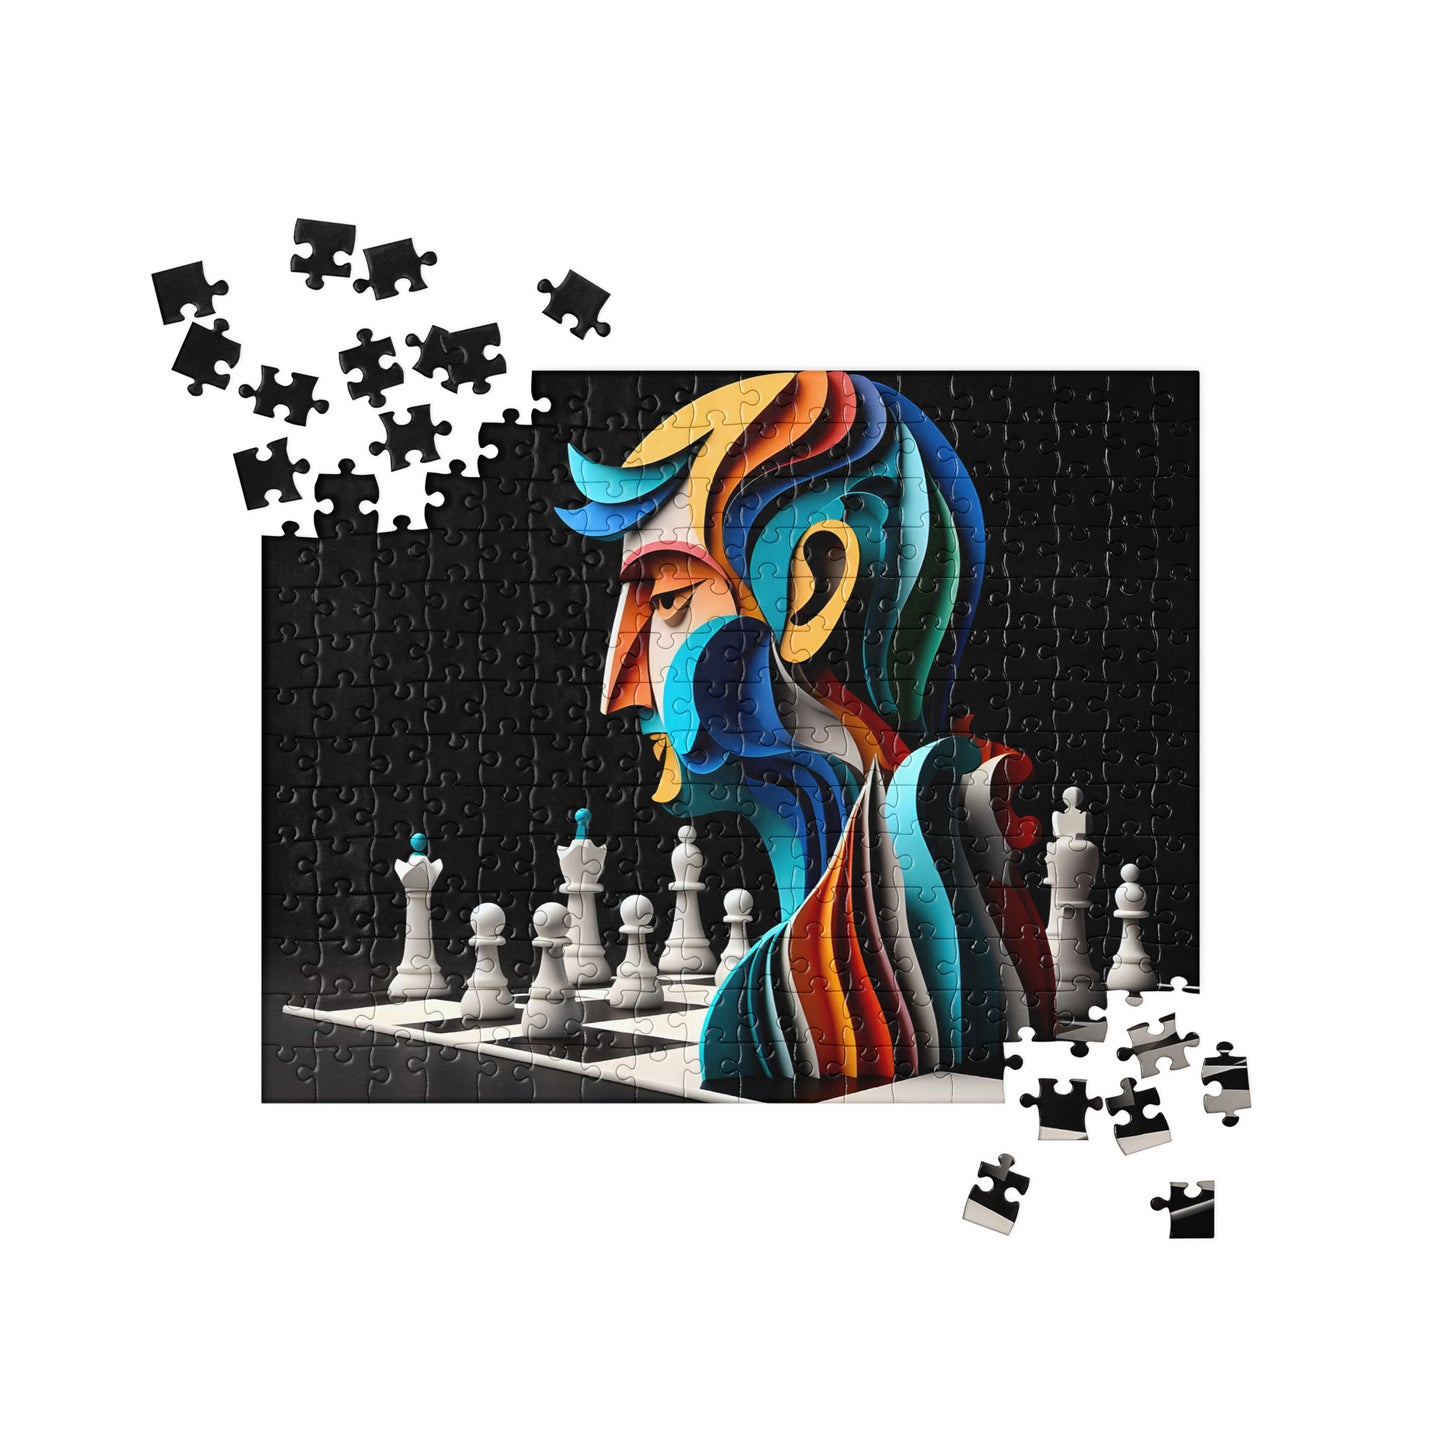 3D Chess Art - Jigsaw Puzzle #4